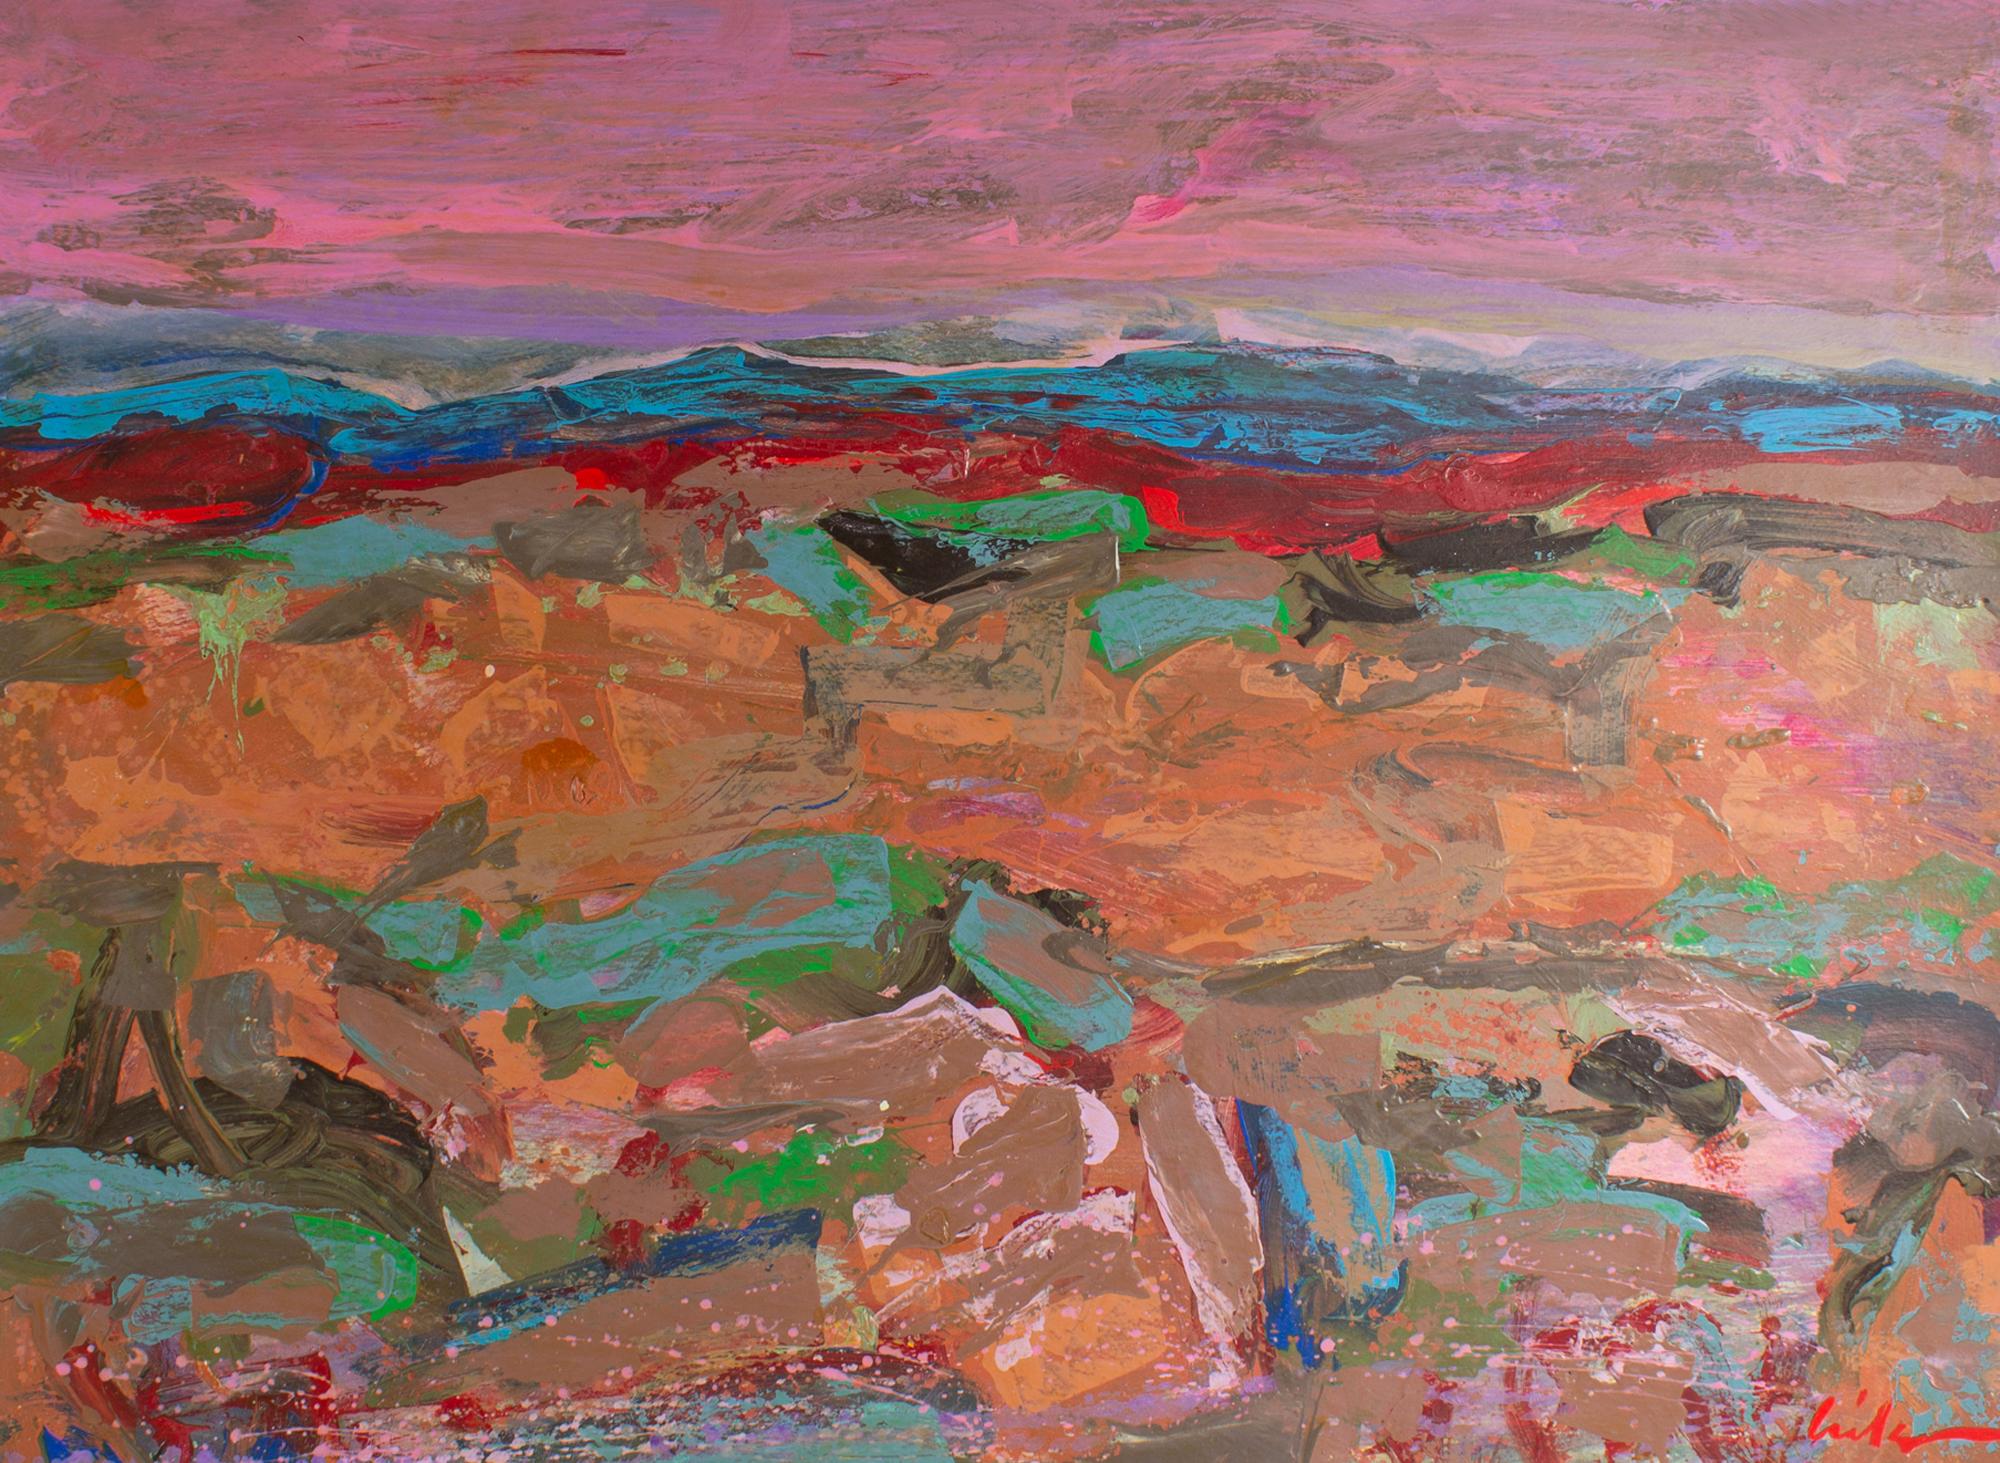 Peinture acrylique sur papier des années 1980 de l'artiste américain Harry Harris (1935-2004). Cette œuvre abstraite représente un paysage vibrant composé de coups de pinceau frénétiques qui forment un paysage vallonné avec des montagnes lointaines,